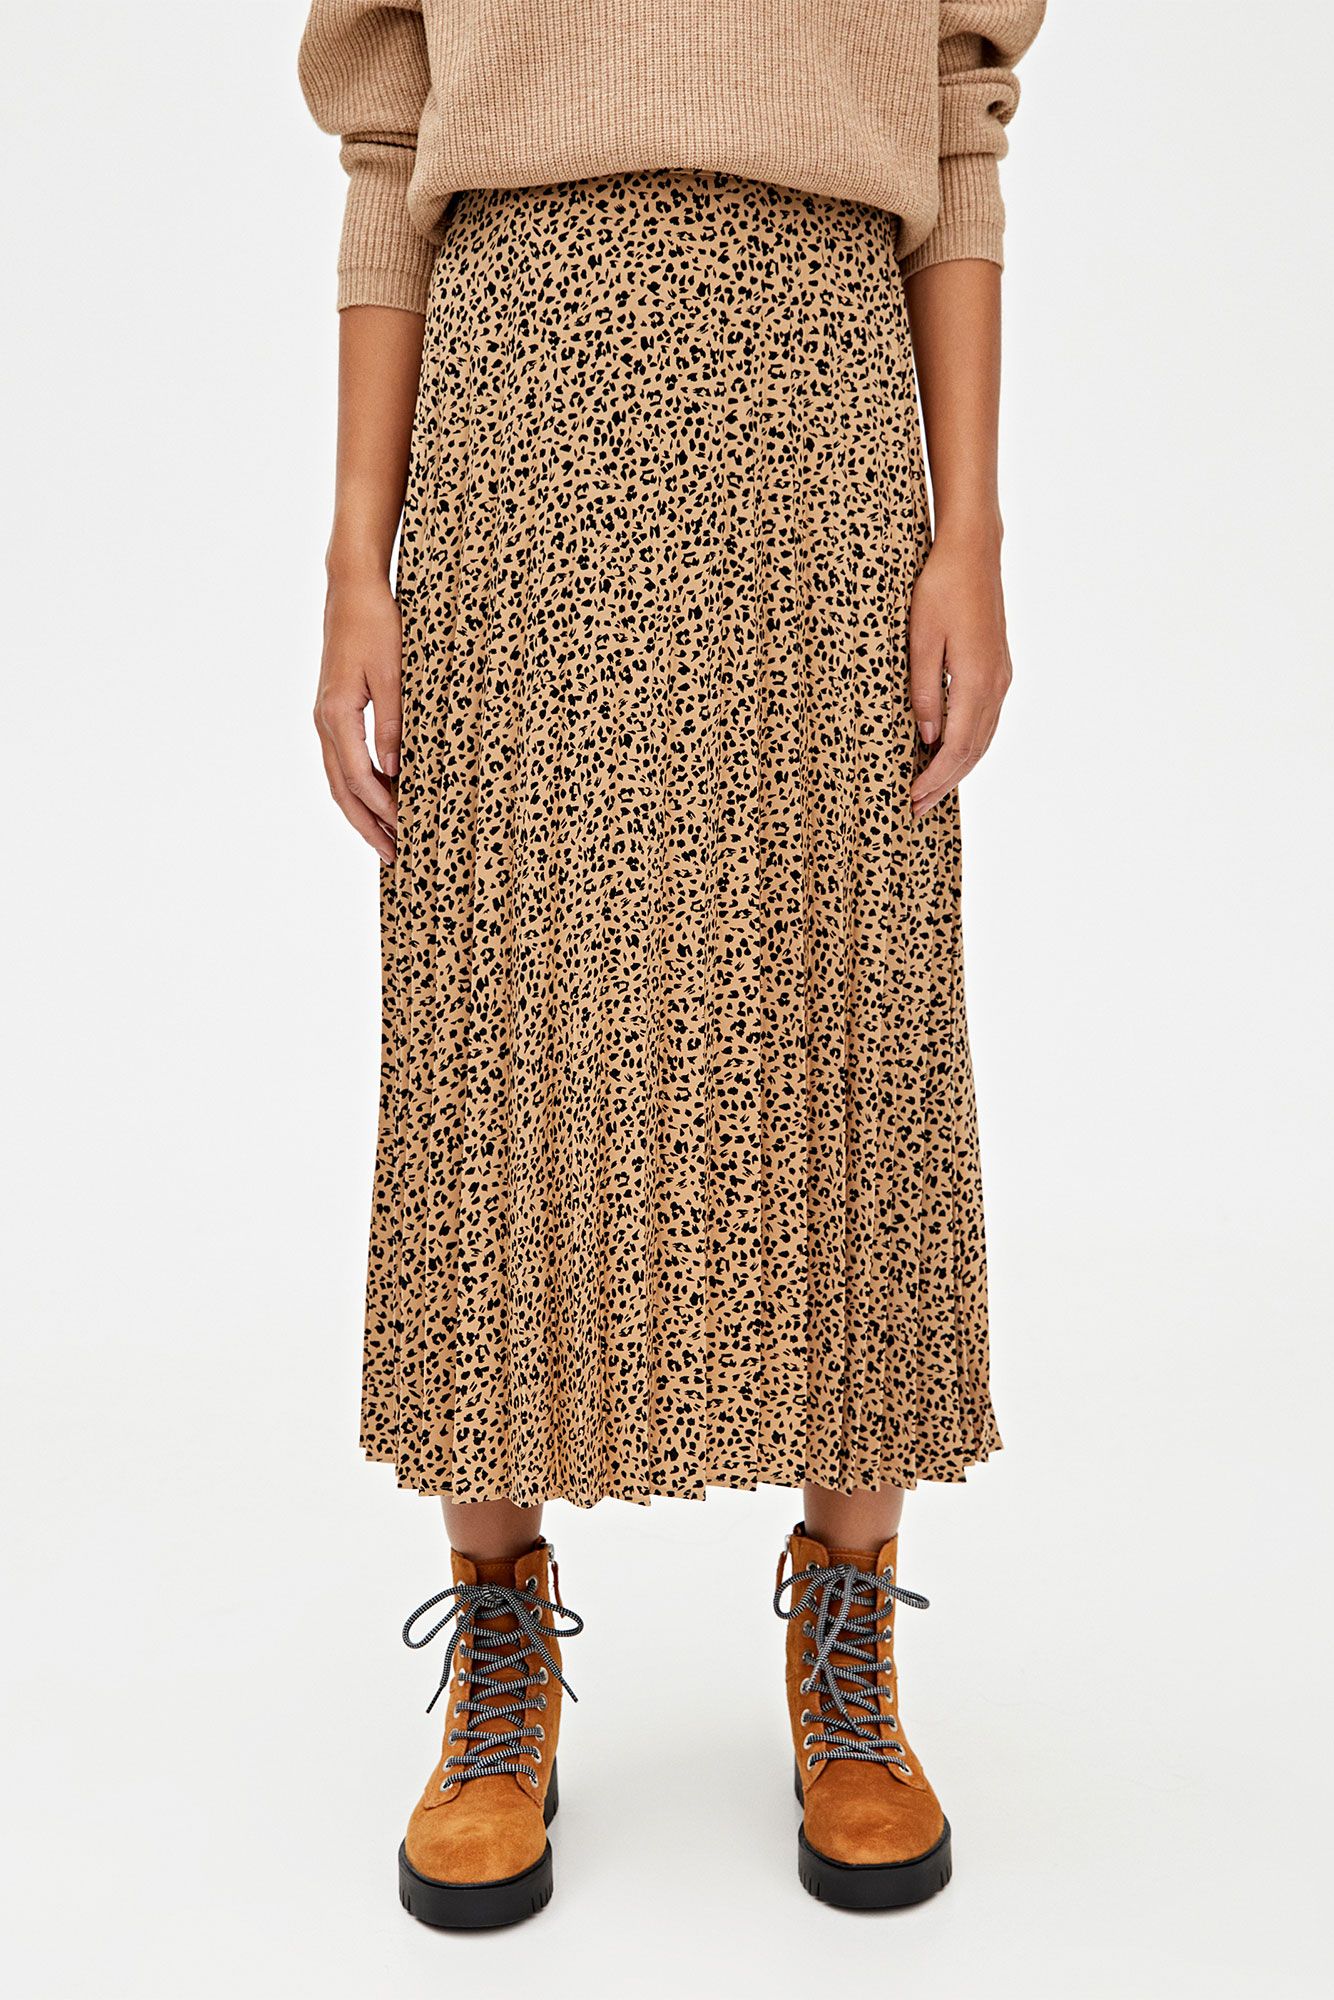 falda larga de leopardo de Pull&Bear que con botas